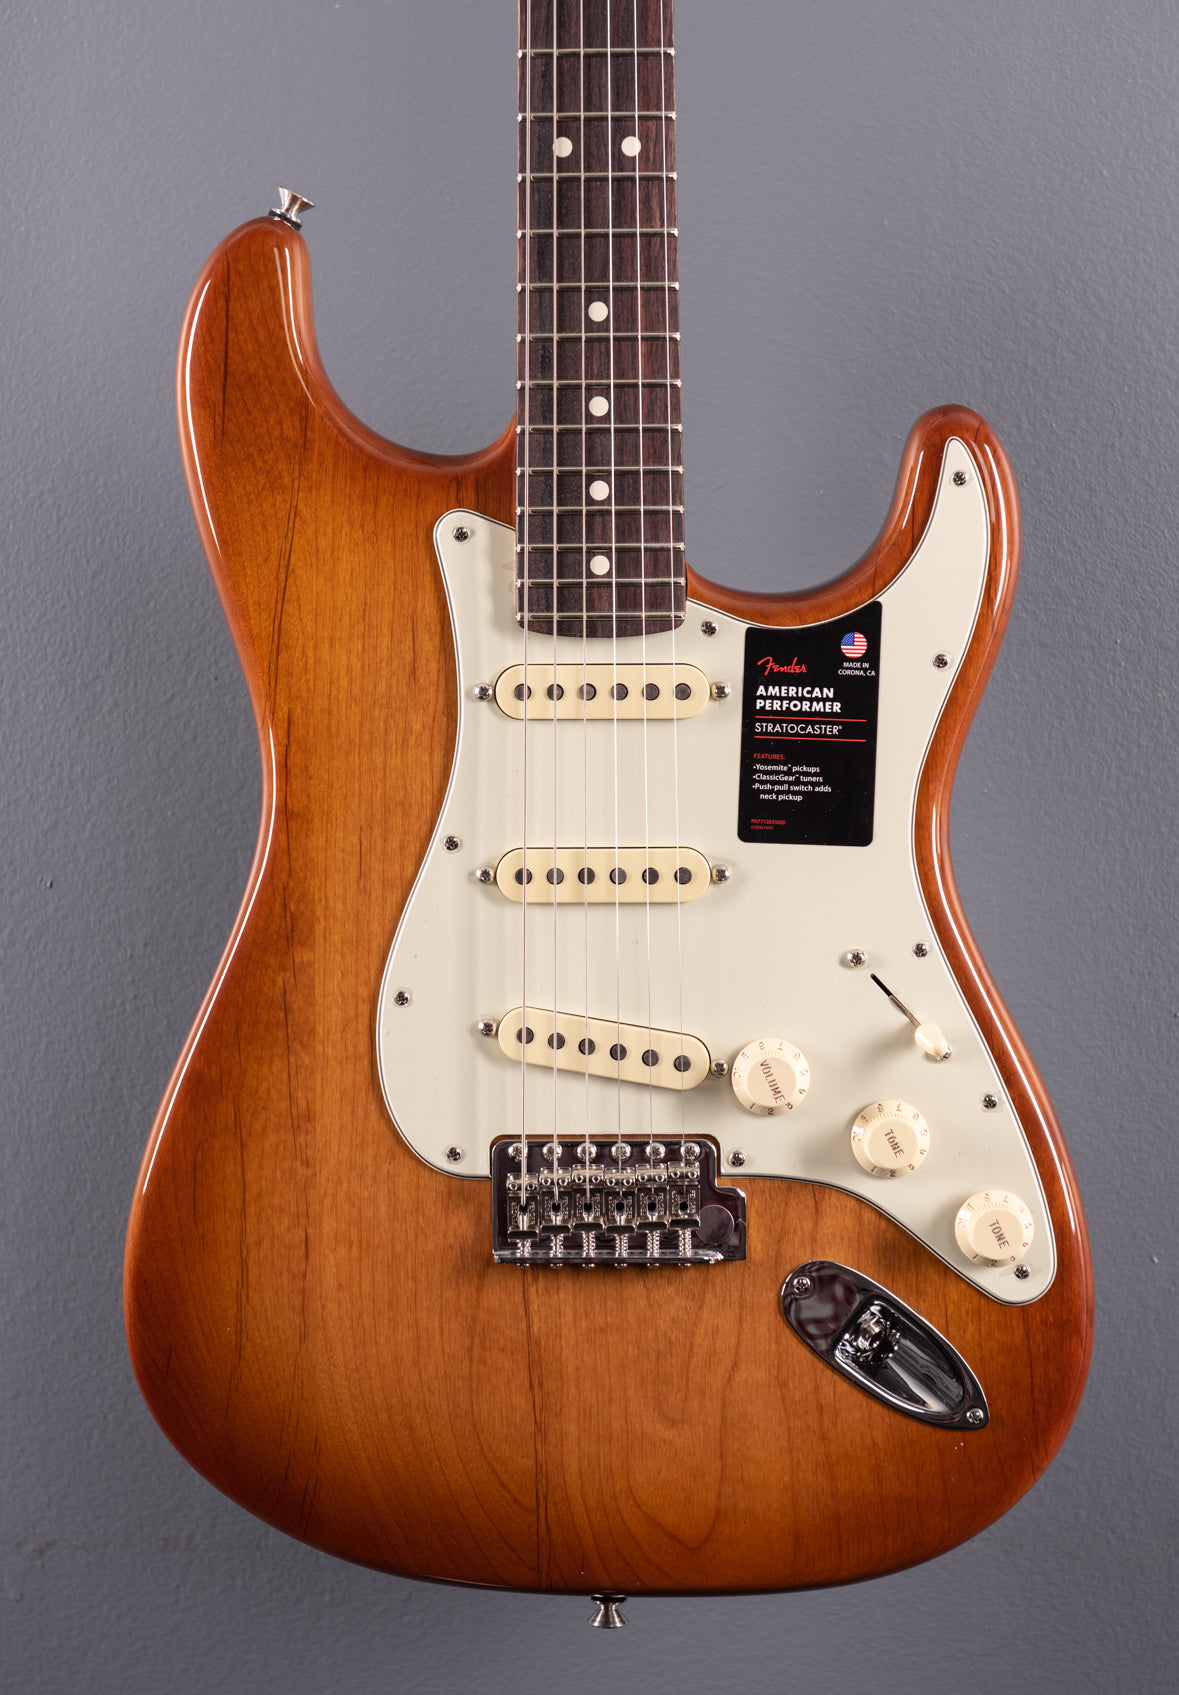 American Performer Stratocaster - Honeyburst